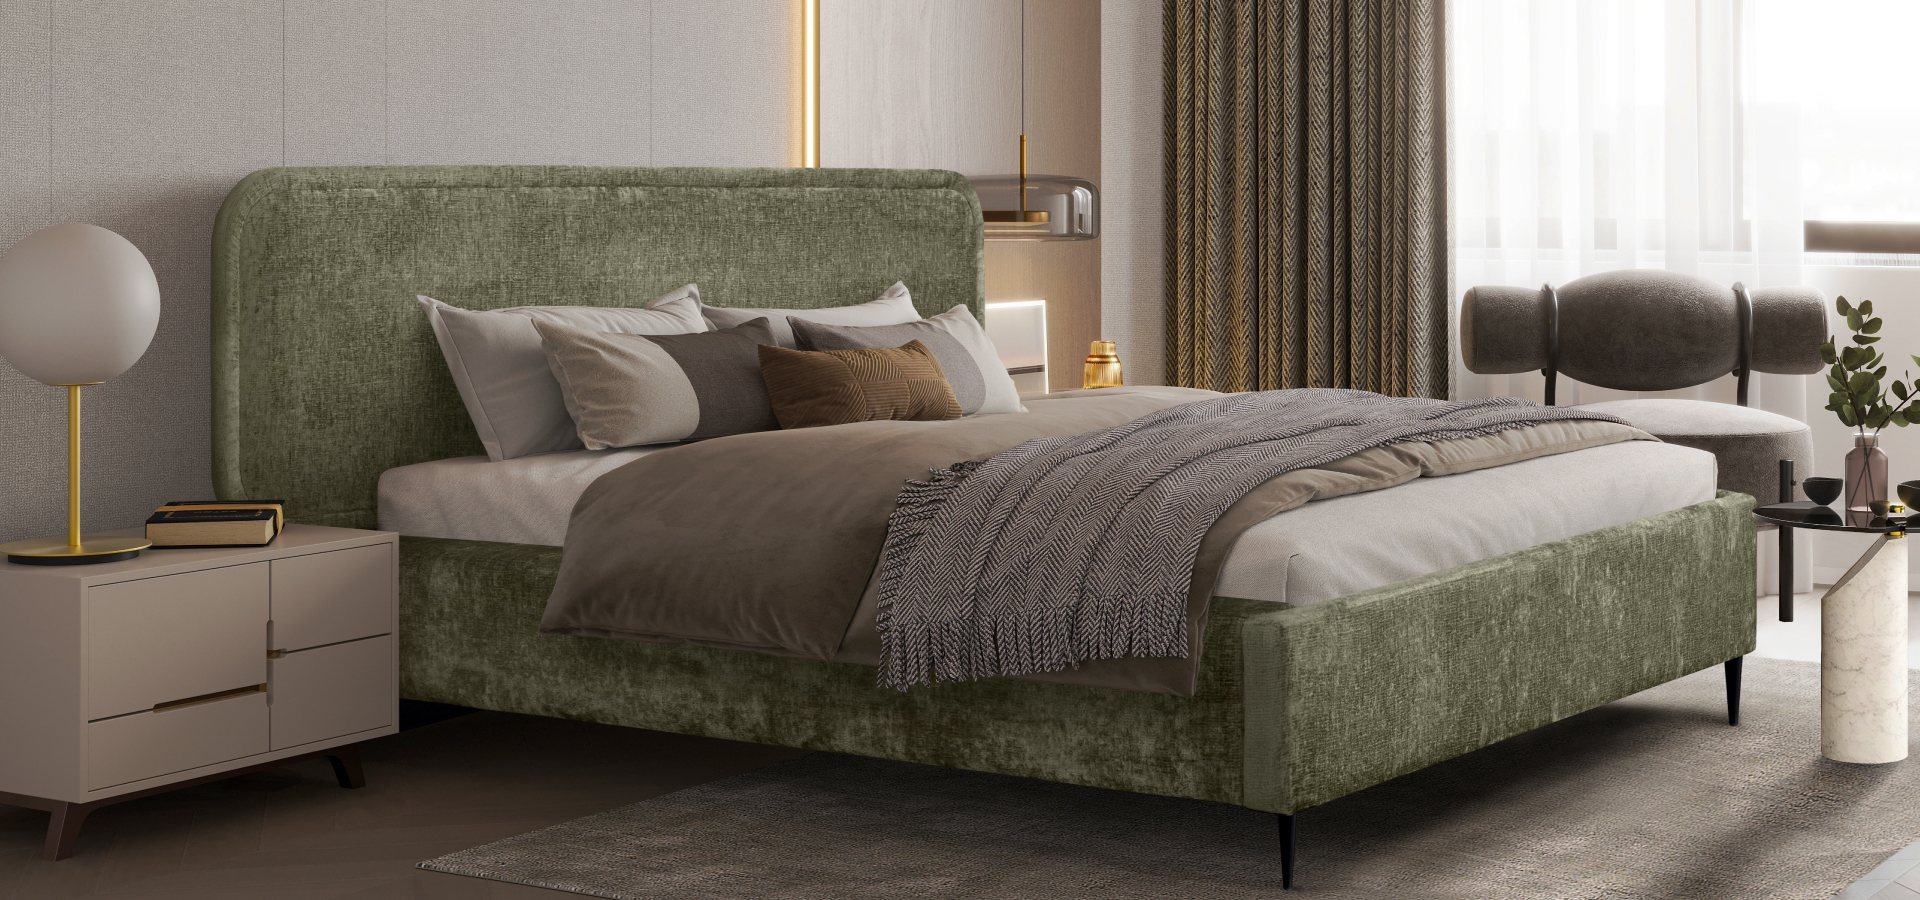 Zielone łóżko z tapicerowanej tkaniny, z beżową i jasną pościelą, w tle szafka nocna z lampką oraz zasłona w kolorze złoto-brązowym.